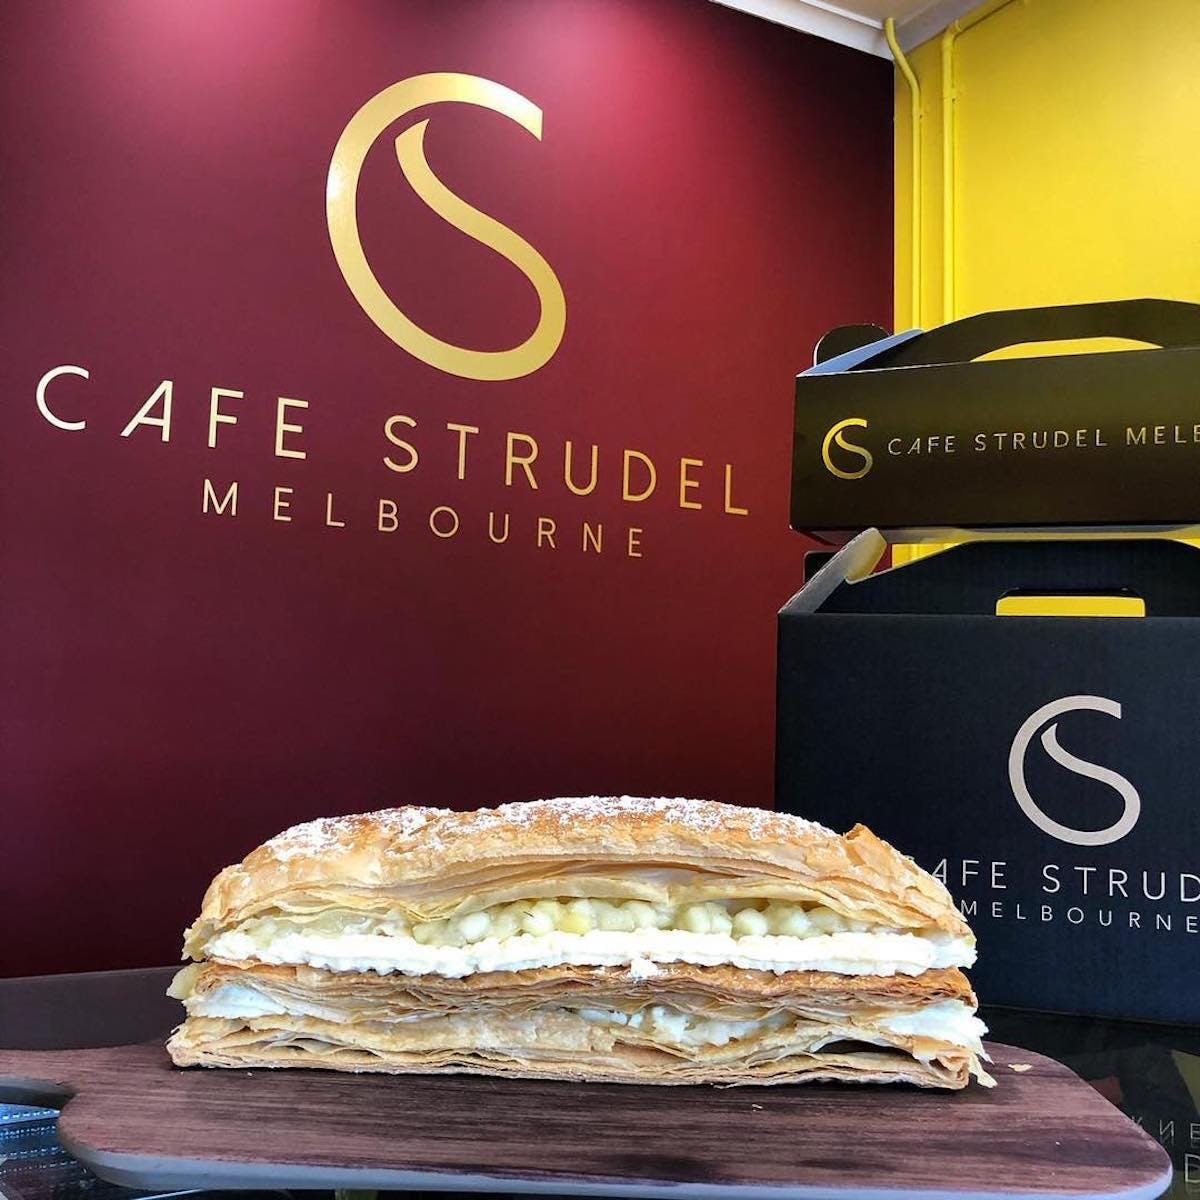 Cafe Strudel Melbourne - Broome Tourism